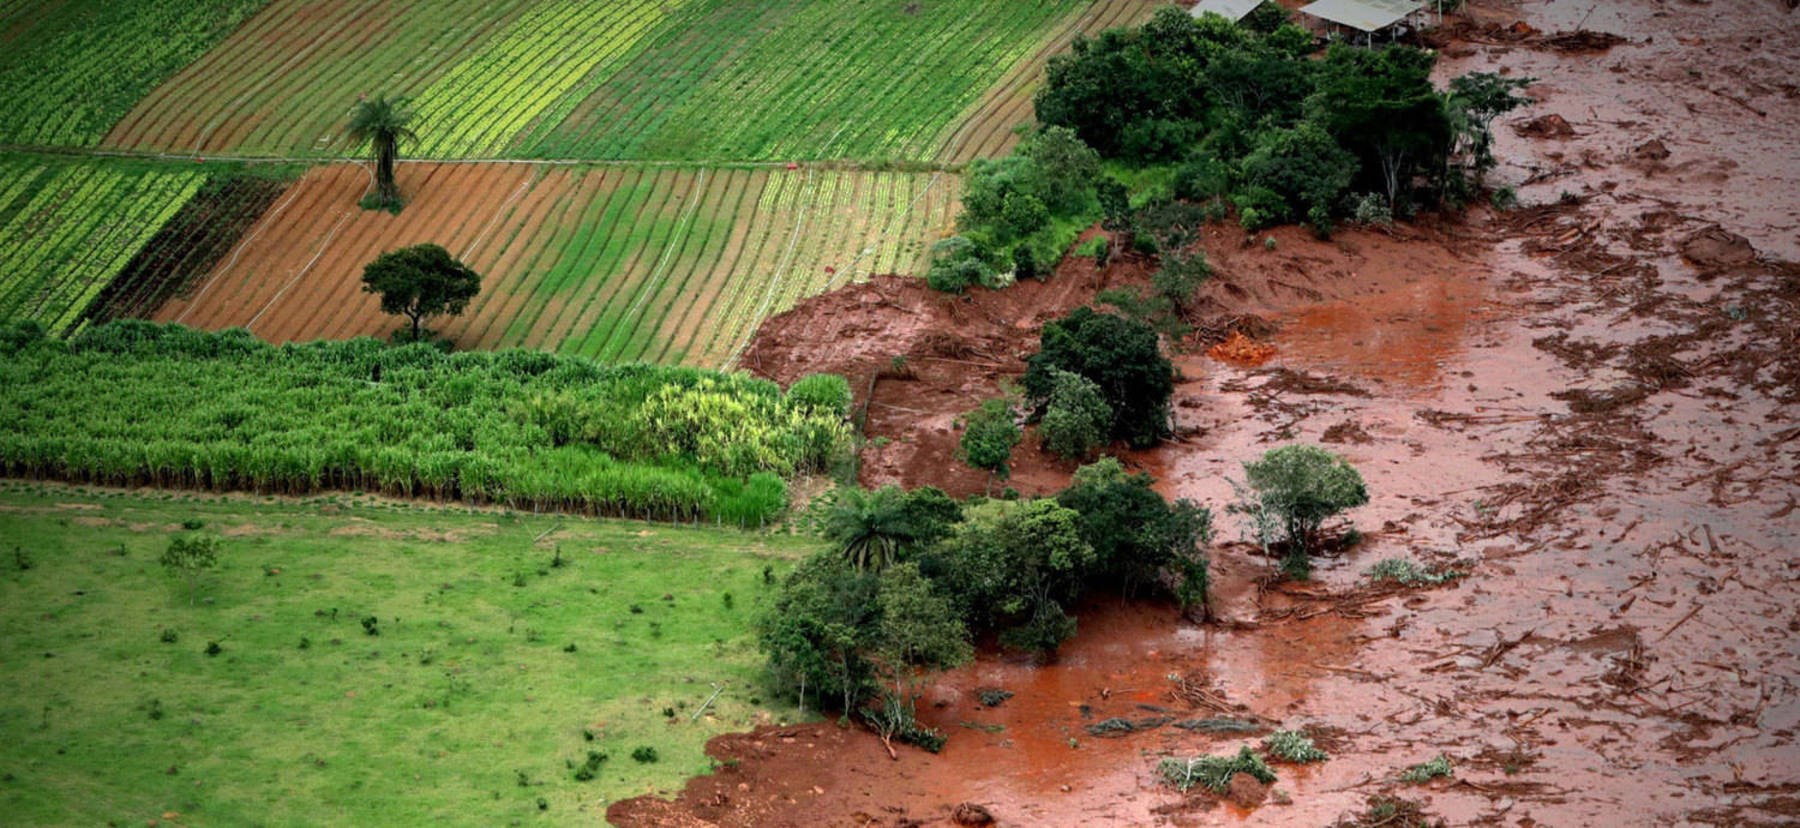 Imagem mostra a barragem de Brumadinho que arrebentou